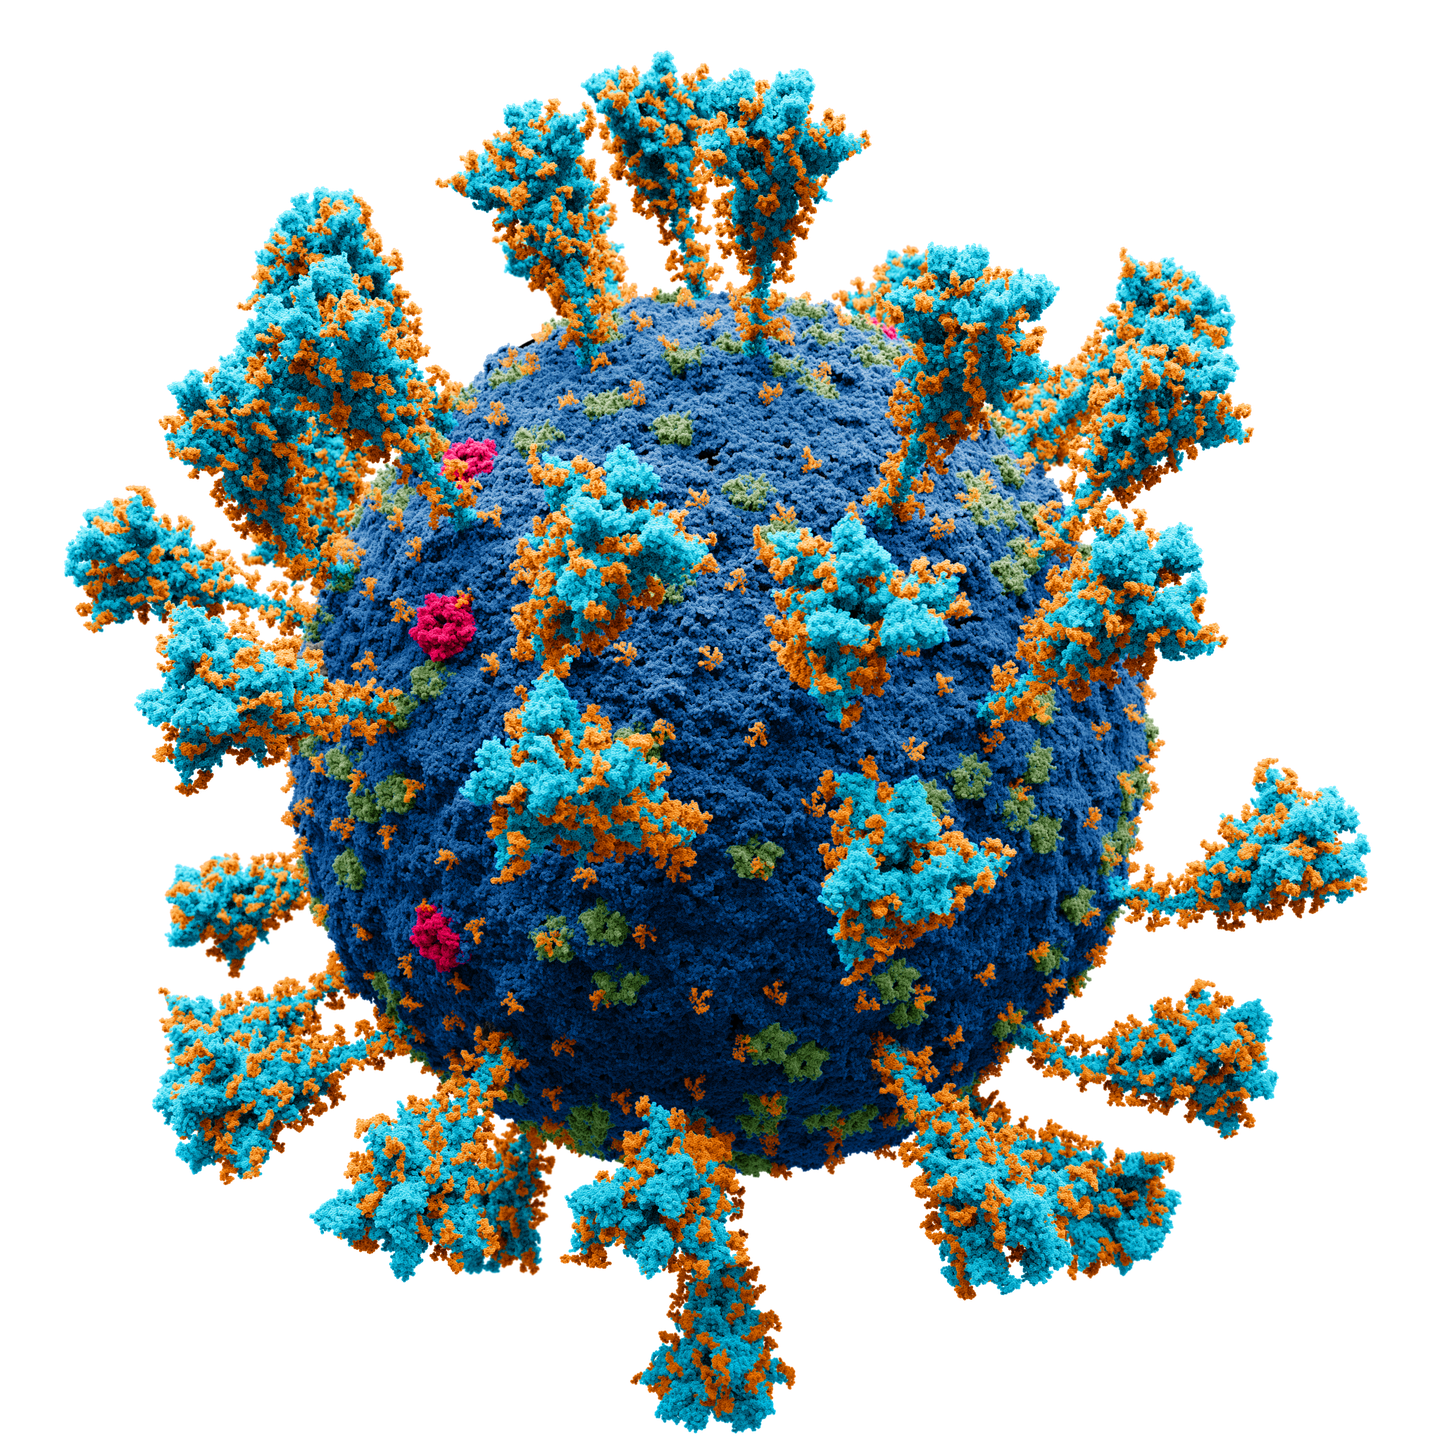 COVID-19-t põhjustava viiruse väliskihis on vähemalt neli põhivalku. Levinuimad vaktsiinid õpetavad inimese immuunsüsteemi jahtima vaid üht neist – ogavalku. Viiruse mudelkujutises vastab igale väikesele pallikesele üks aatom.